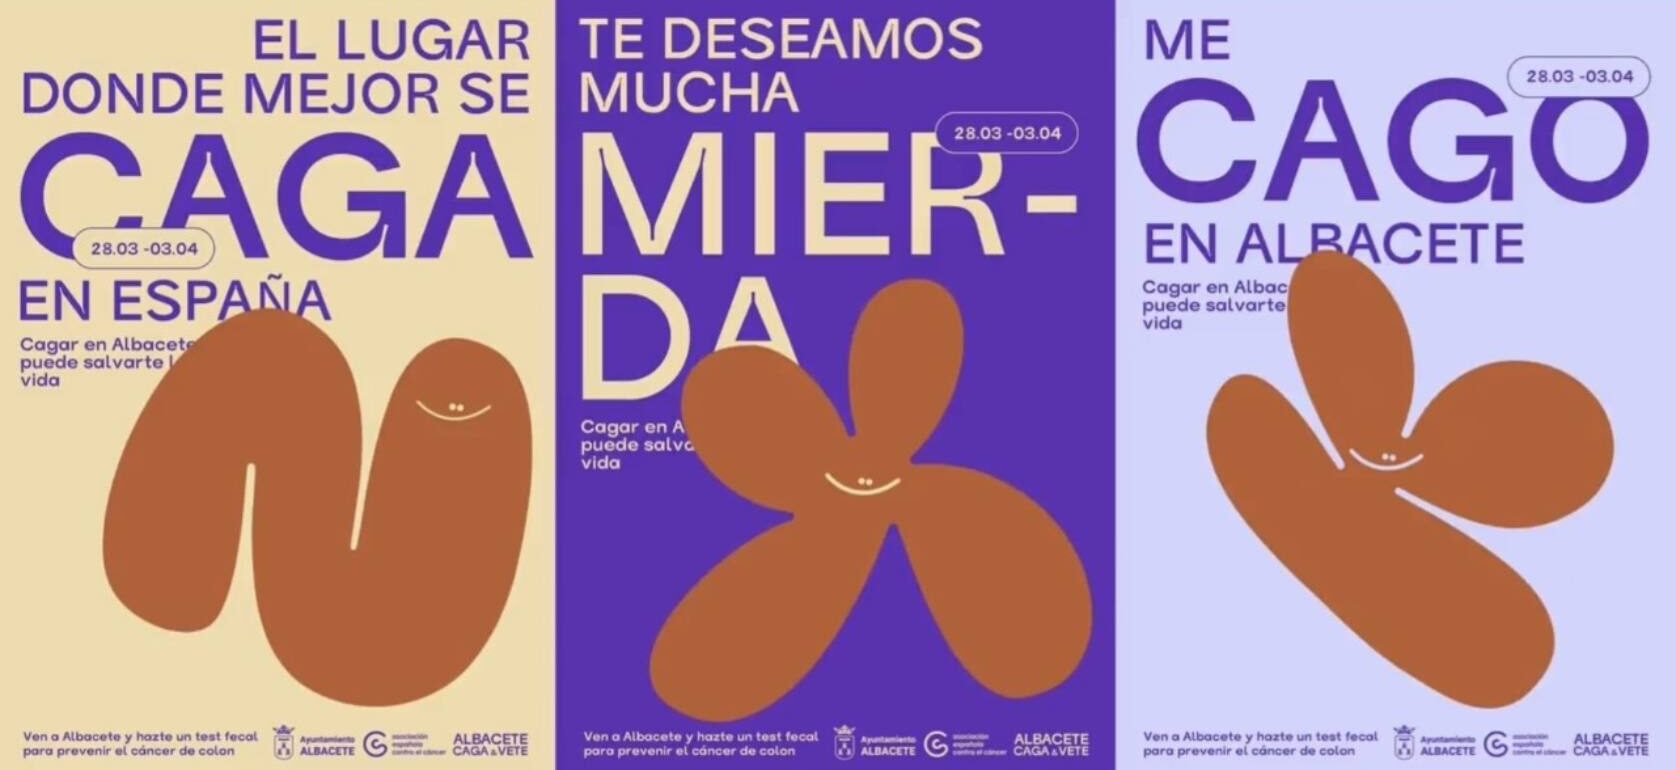 Campaña ficticia de una escuela de creativos de Madrid cuyo eslogan es "Albacete, caga y vete". Imagen de Escuela Brother.